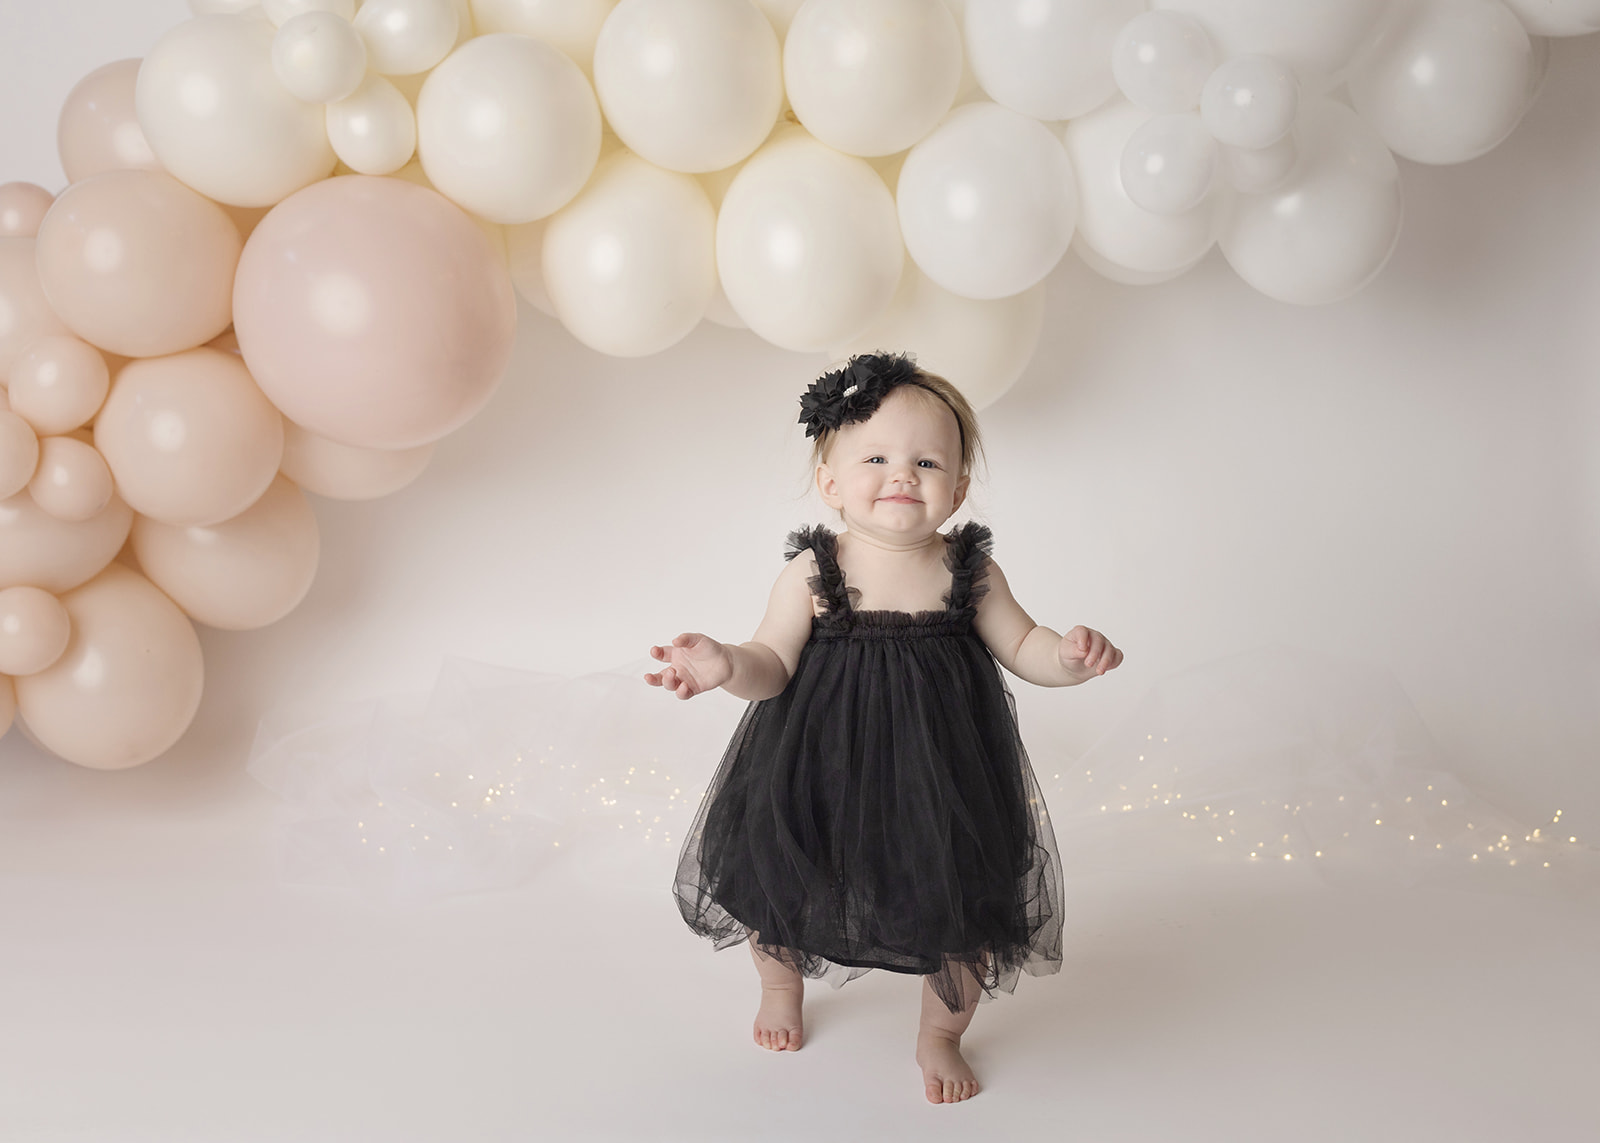 1st birthday girl cake smash photo shoot portrait black dress